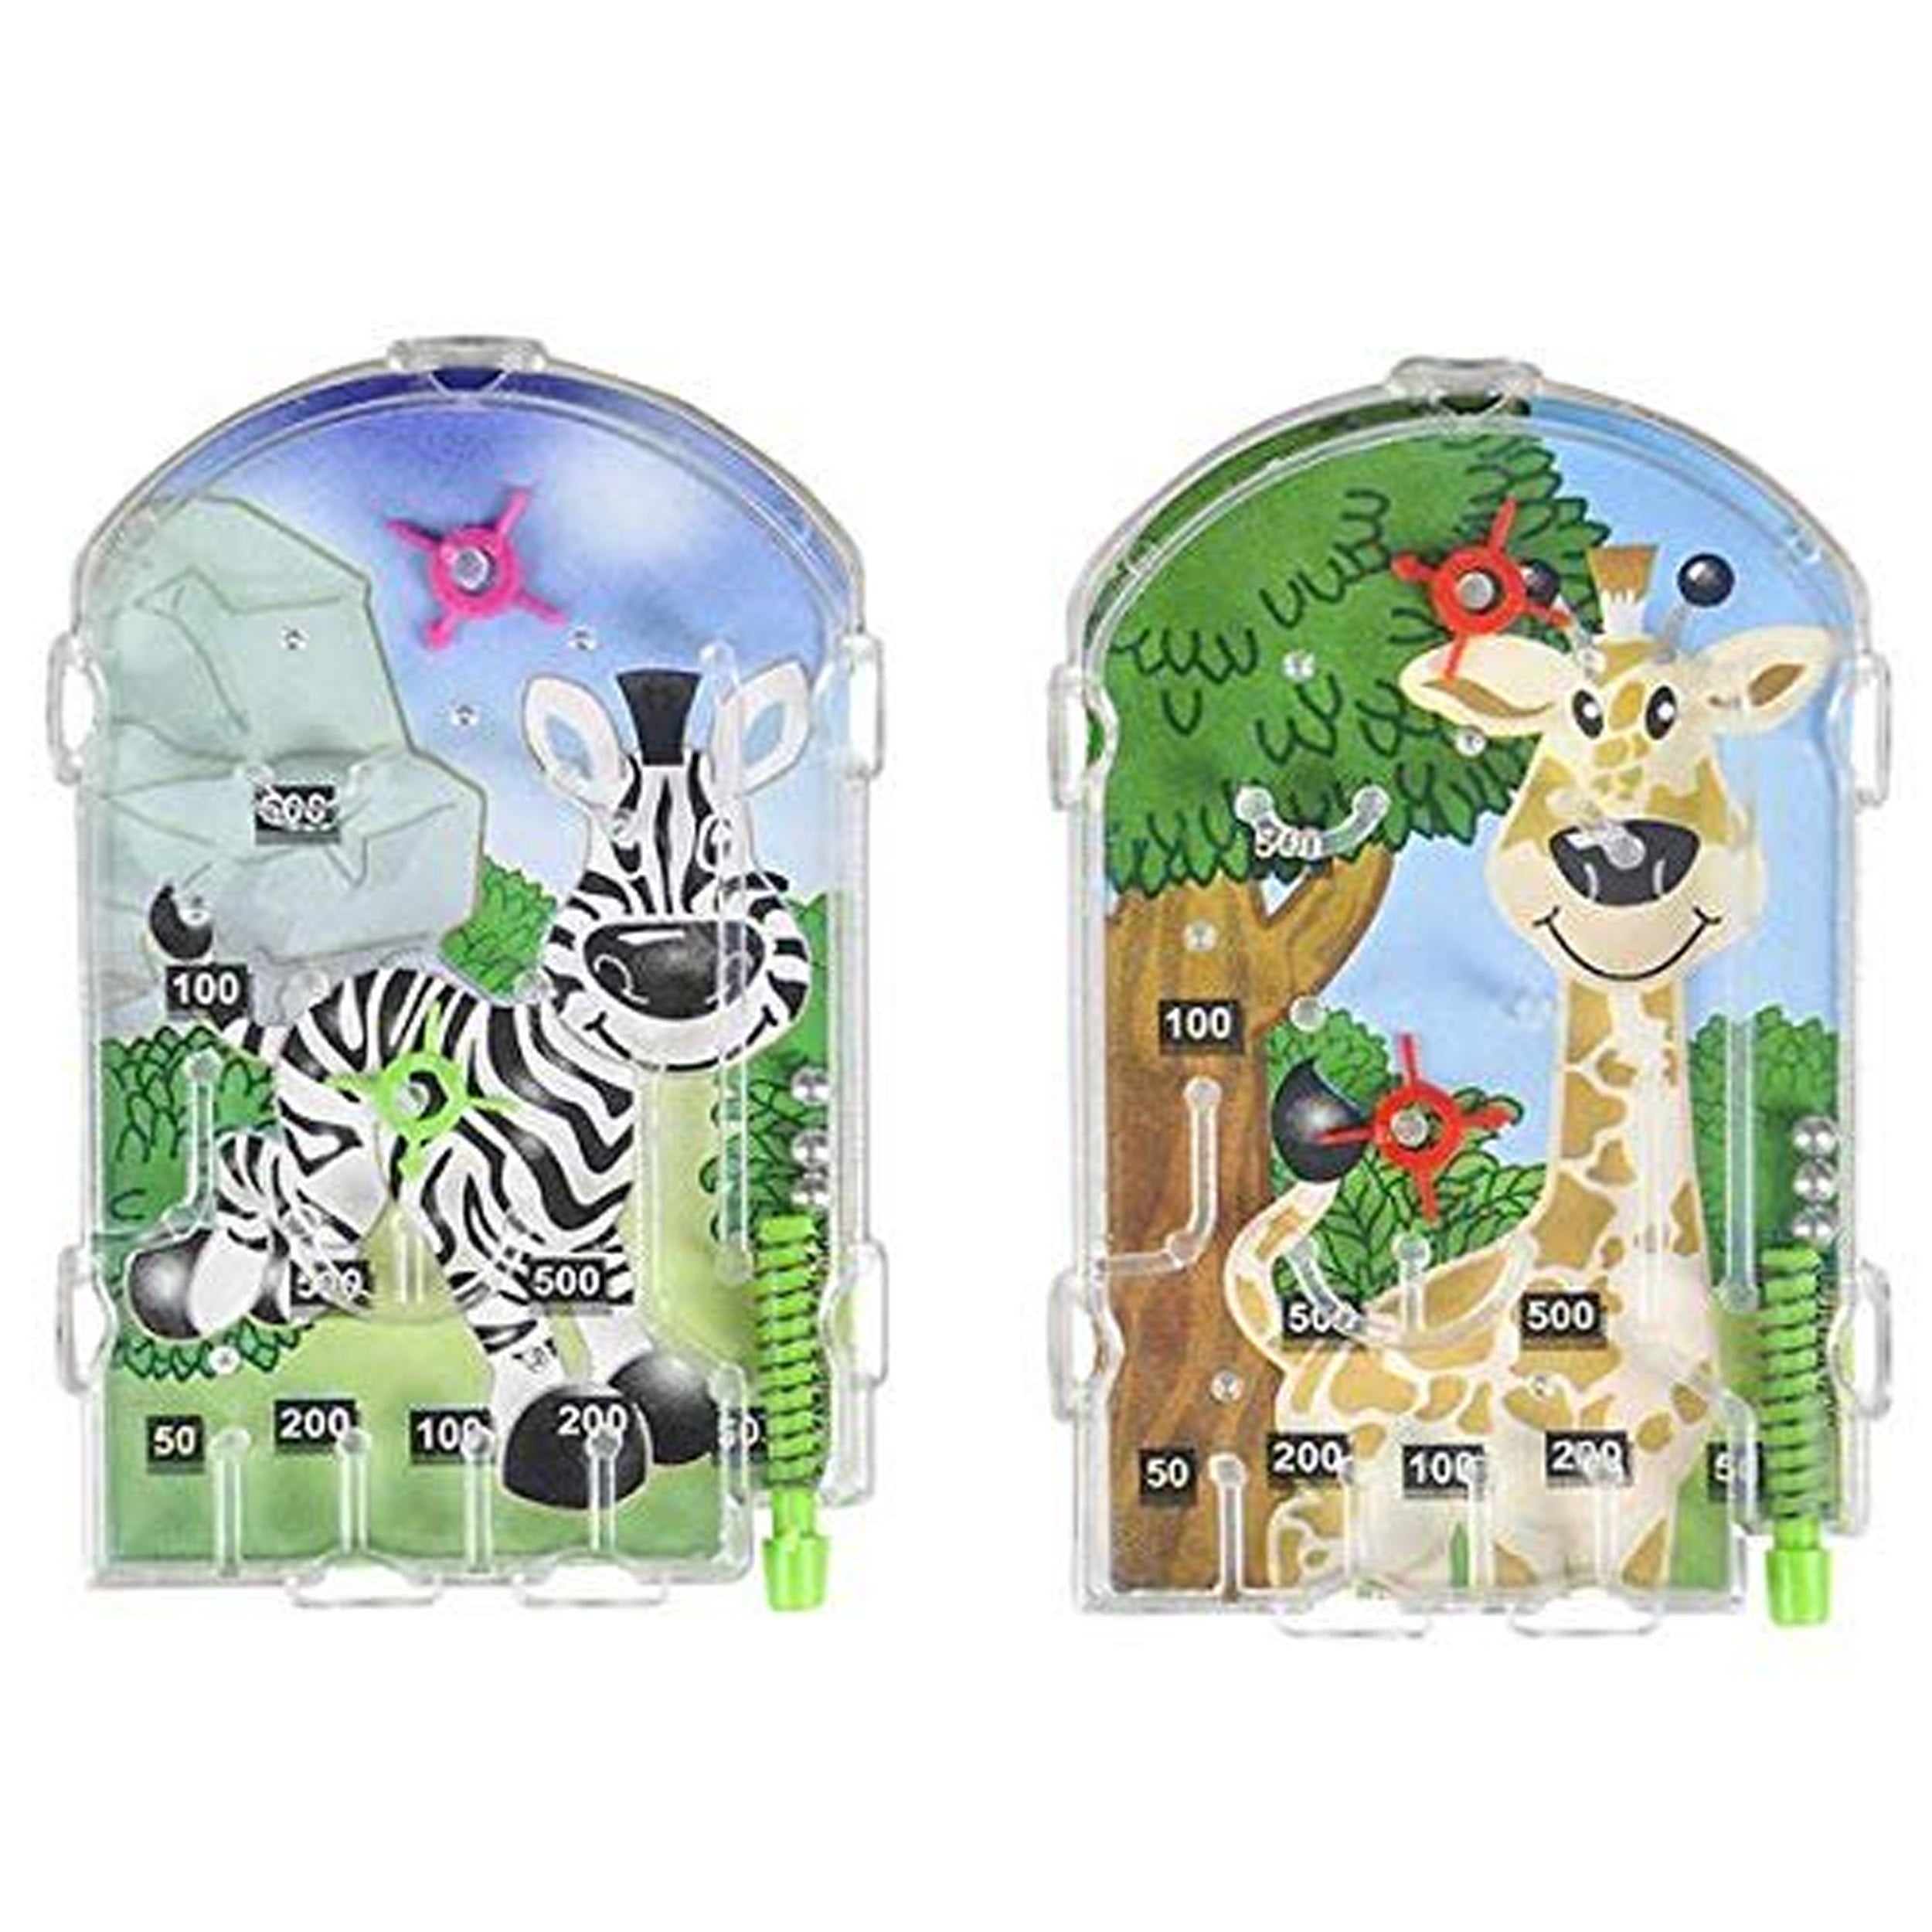 Zoo Animal Pinball kids toys (1 Dozen=$5.99)